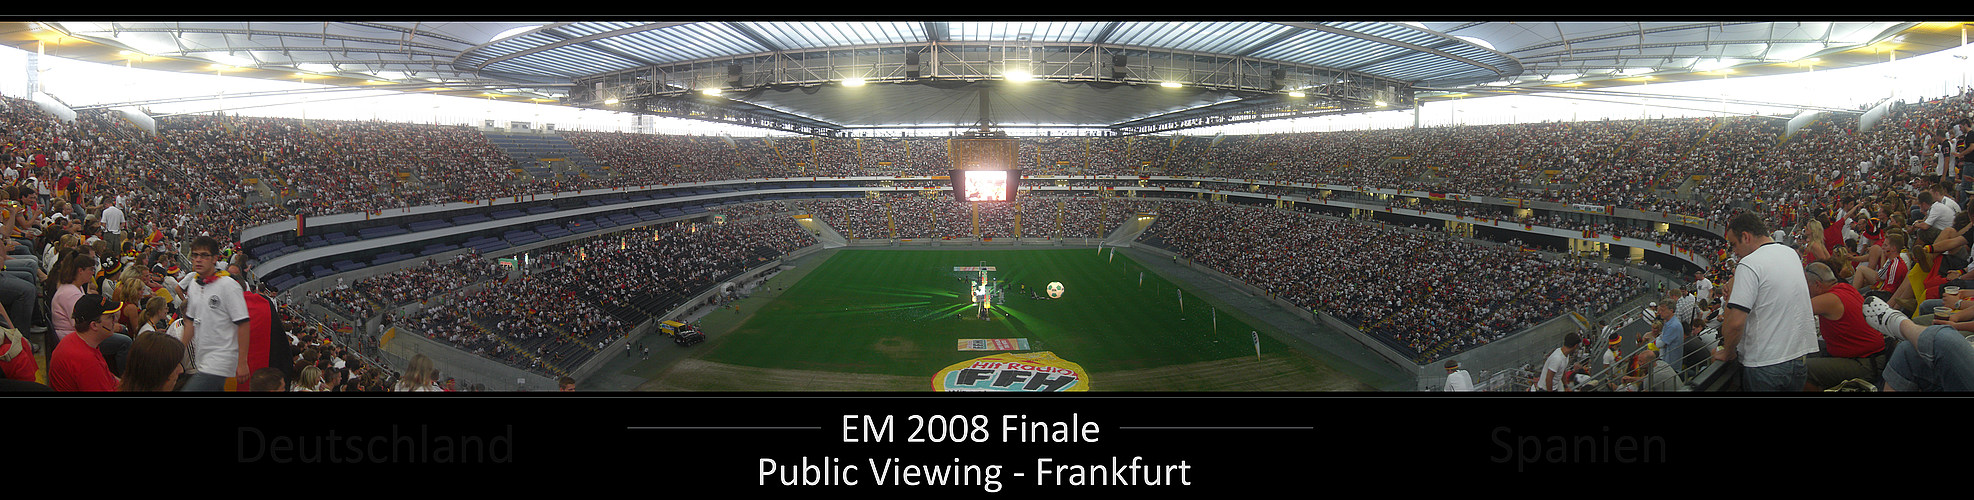 EURO 2008 Finale - Commerzbank Arena Frankfurt